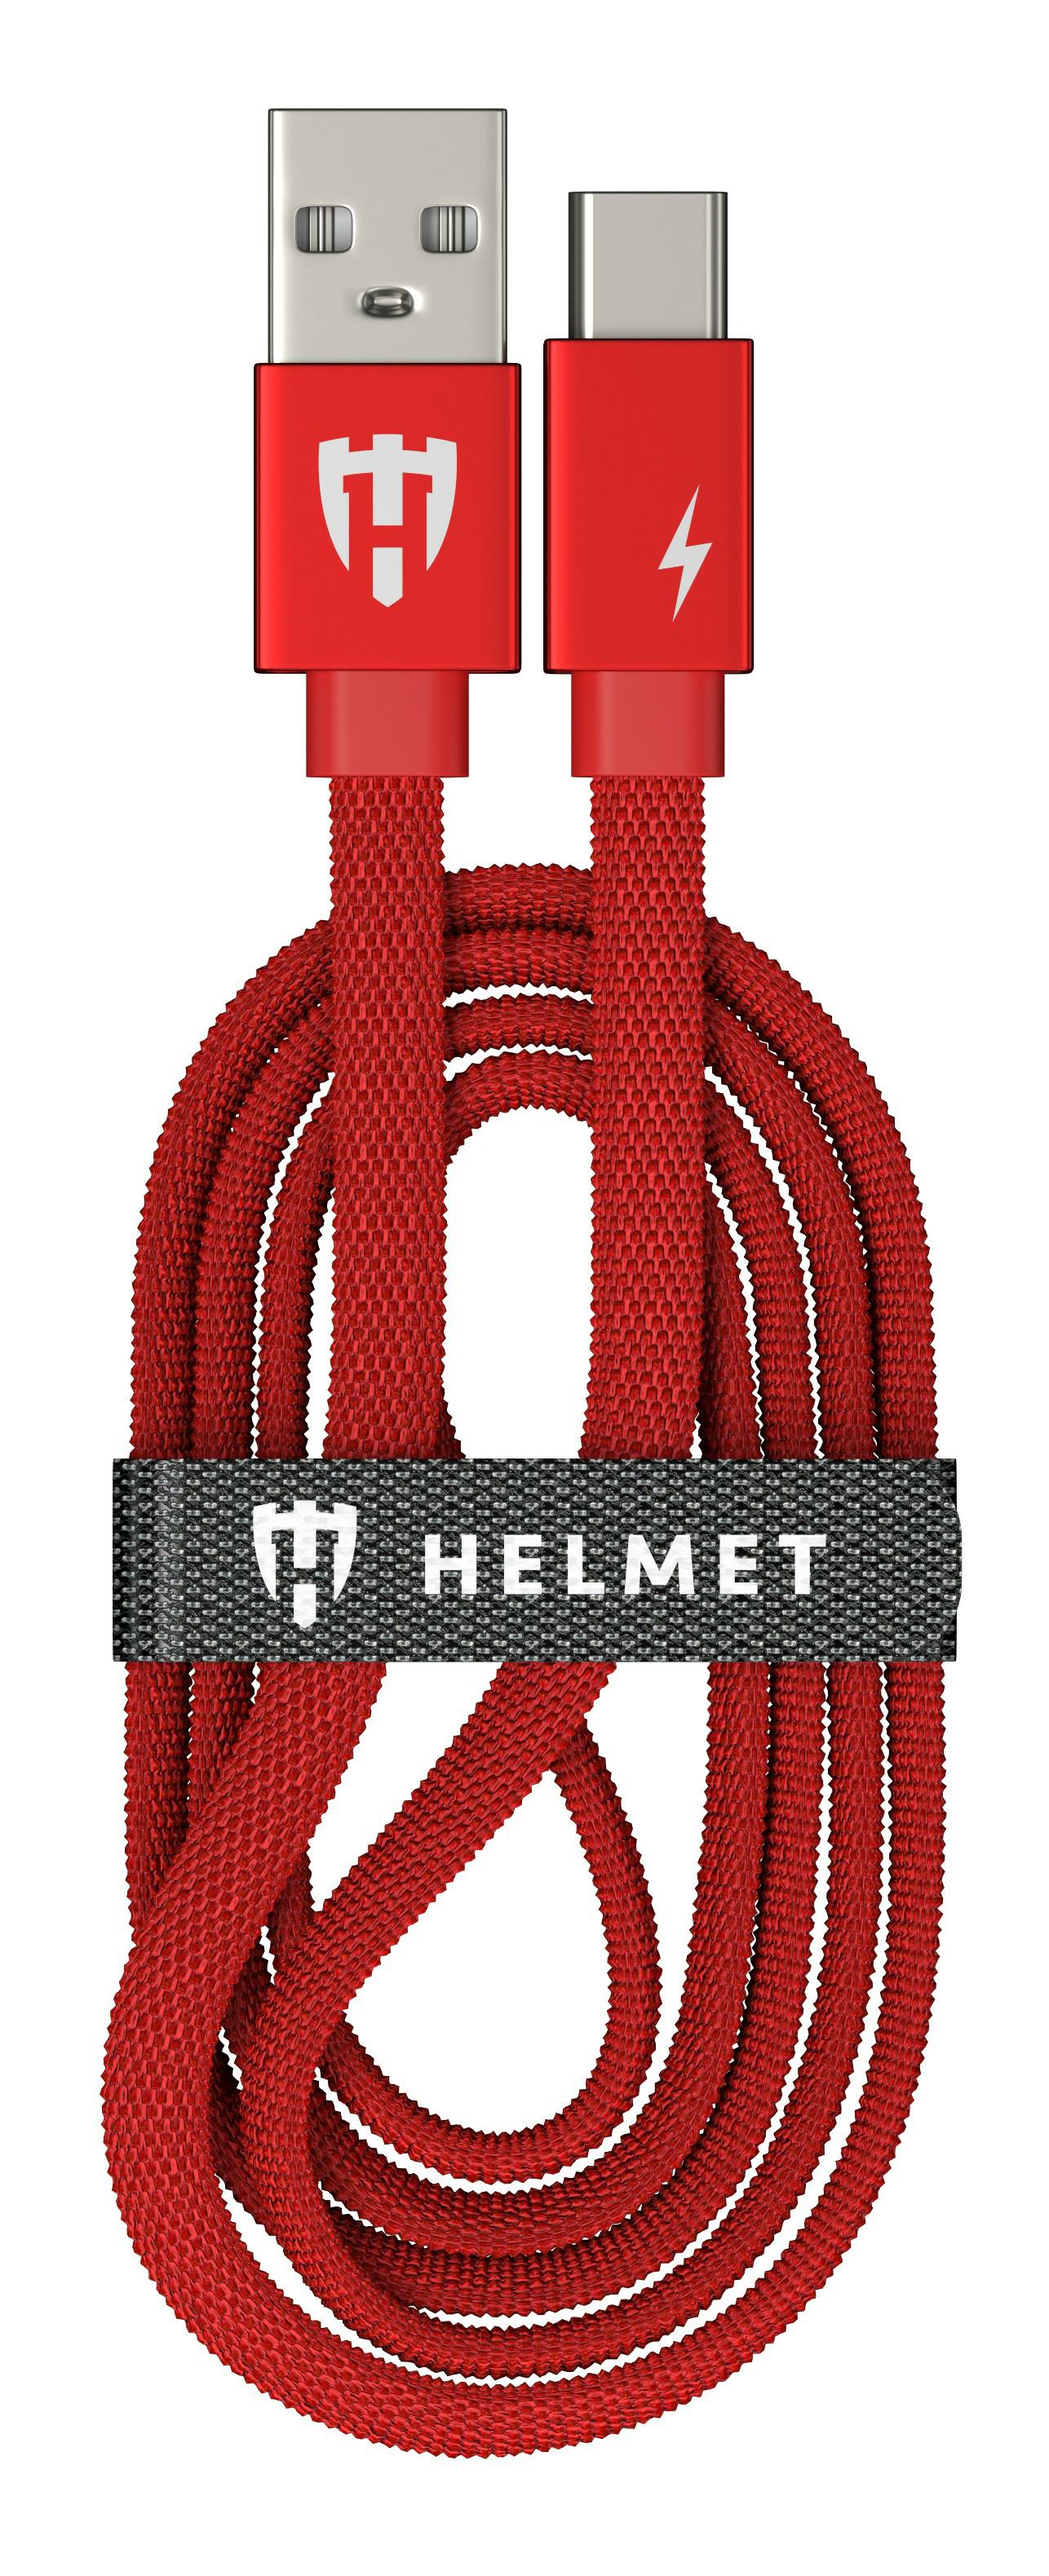 HMT-CUTCKFRD, Зарядный кабель Type-C HELMET Kevlar Flat Cable 1m Red,
Зарядный кабель Type-C HELMET Kevlar Flat Cable - 1m Red